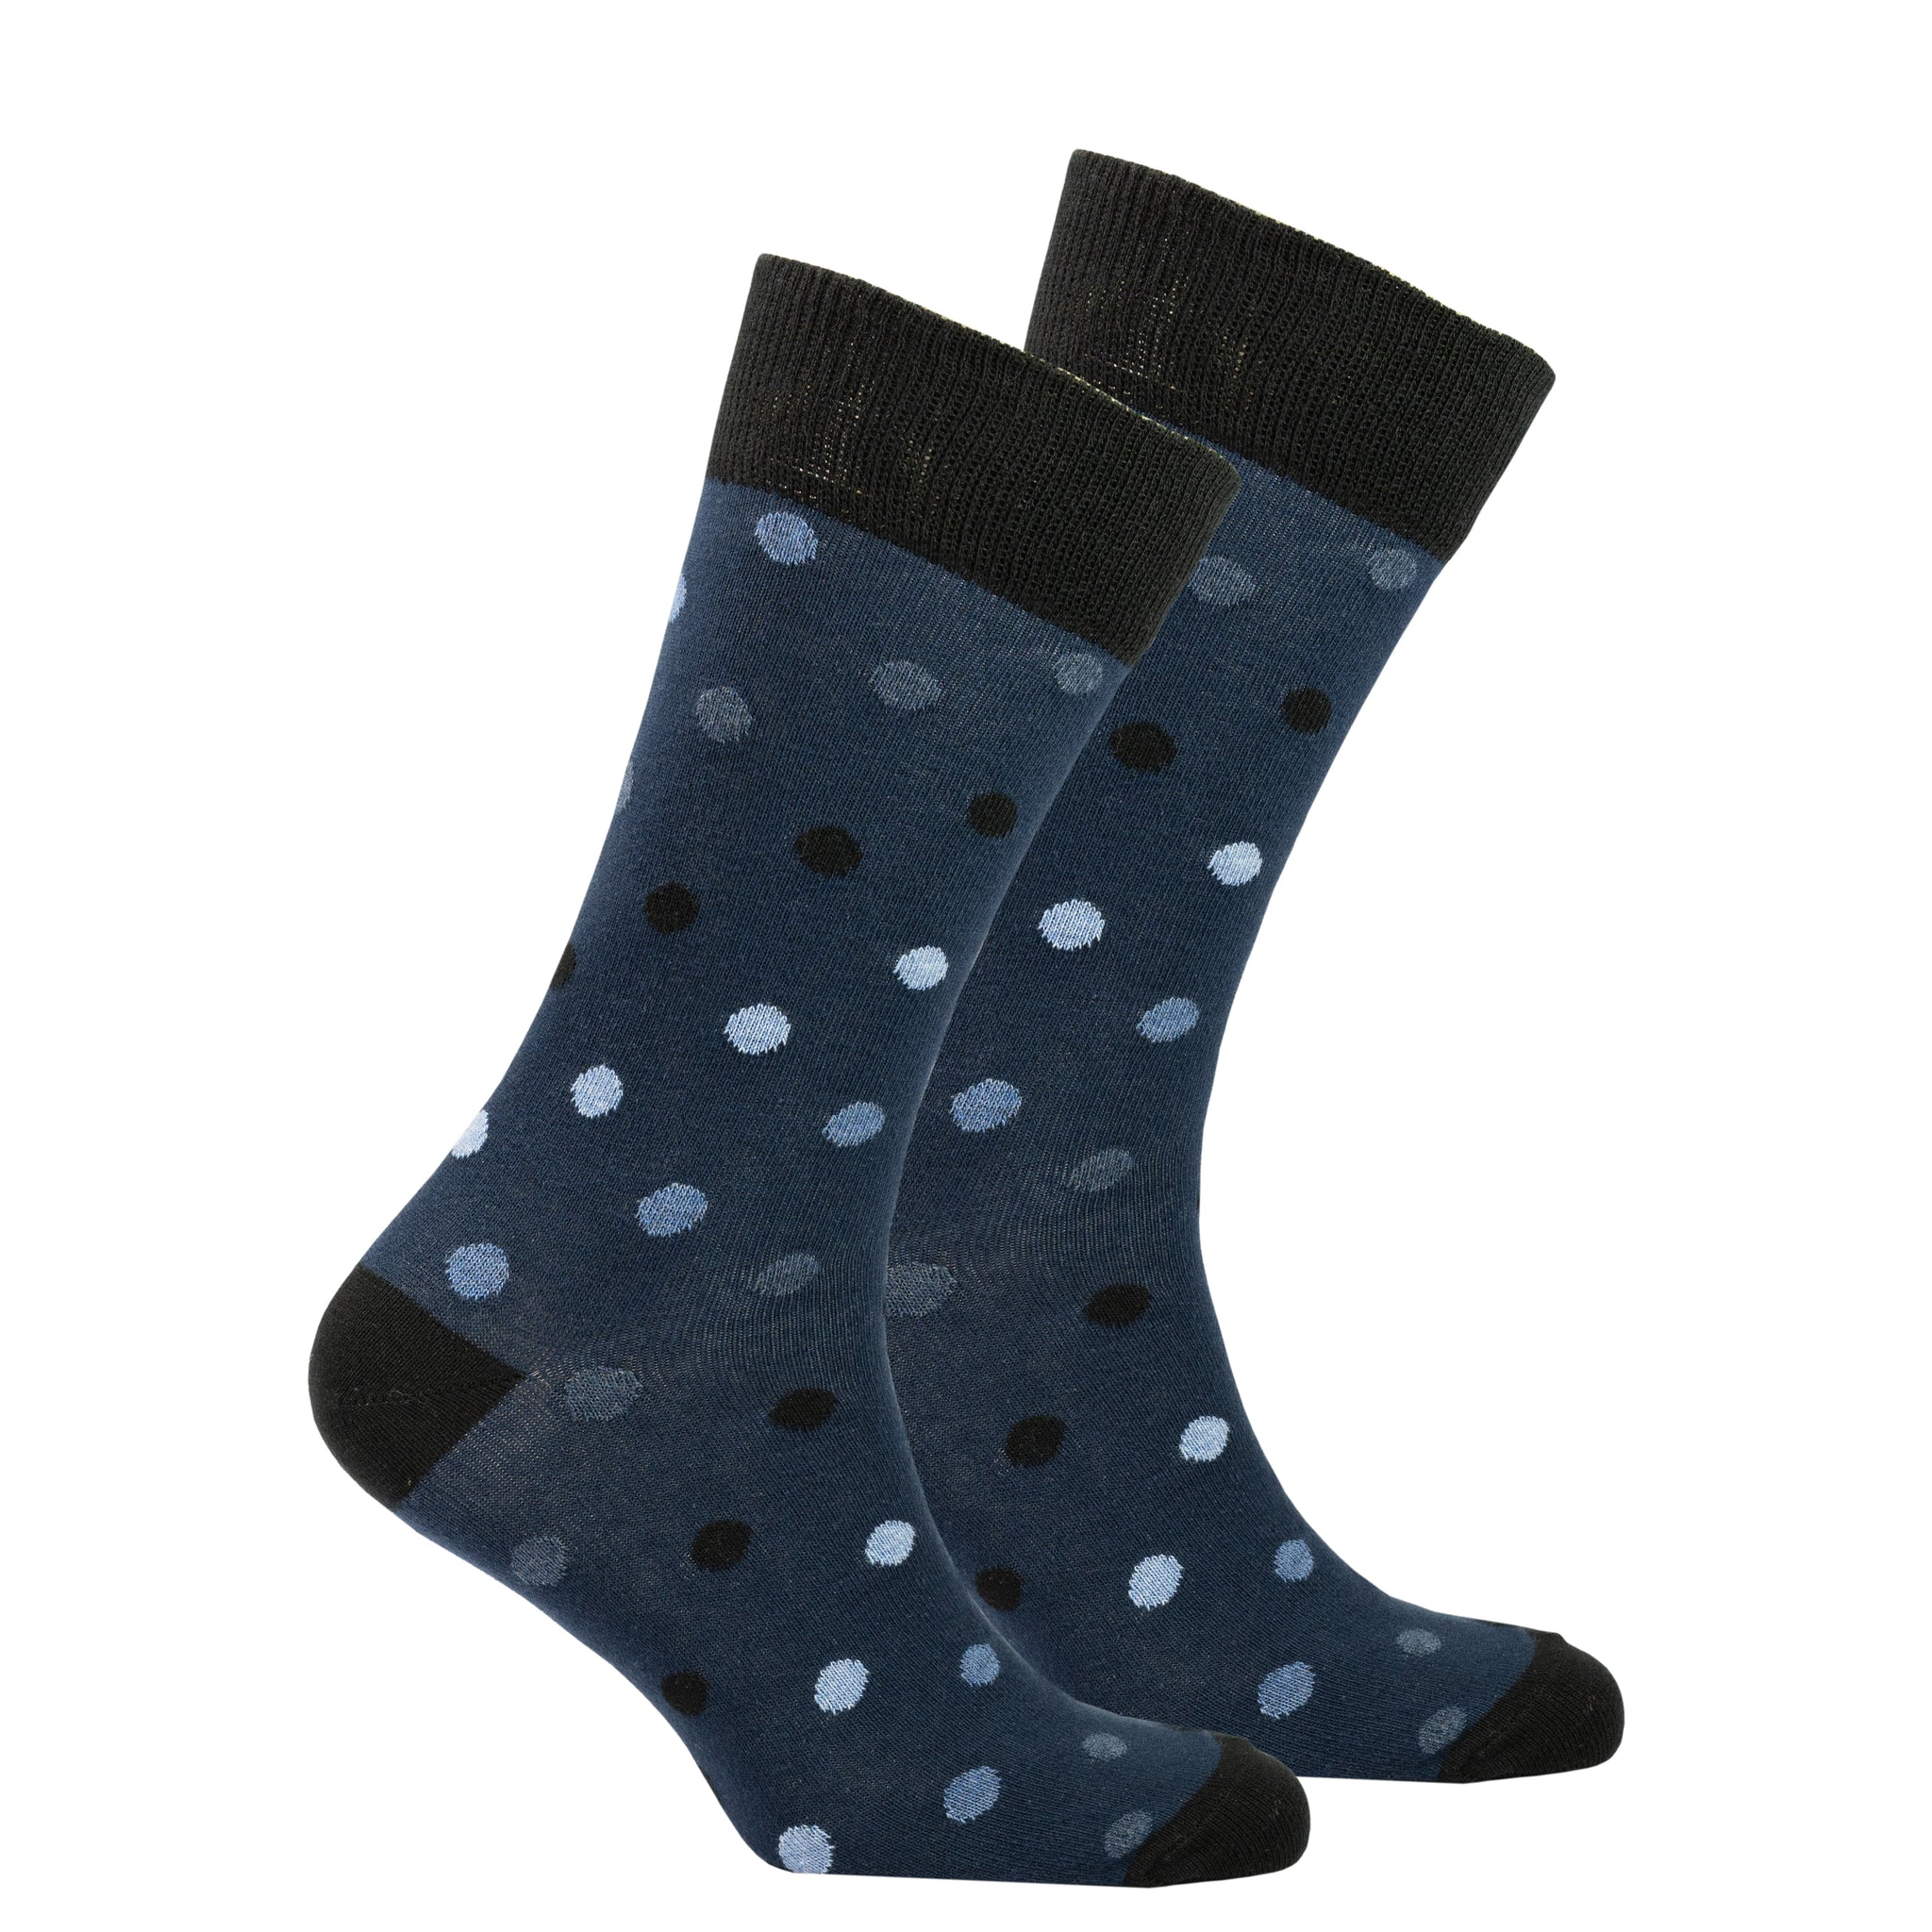 Men's Azure Dot Socks grey and black